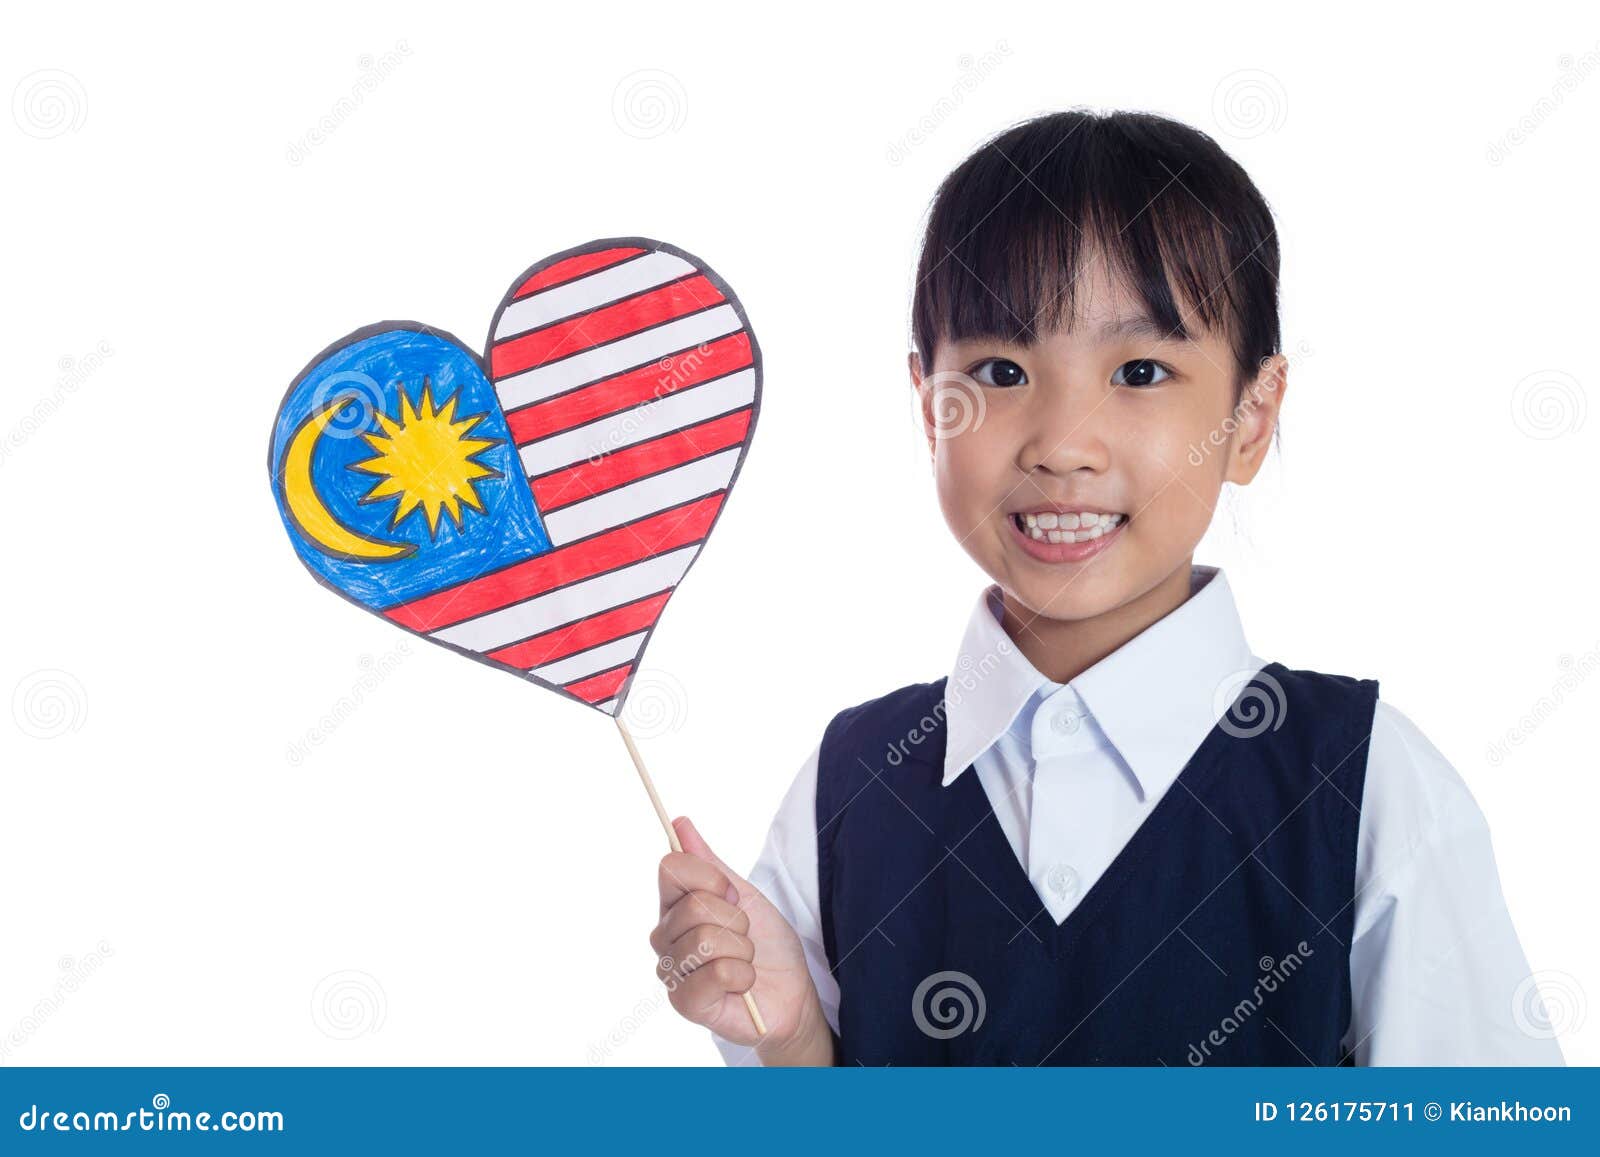 Chinese Malaysian Girl